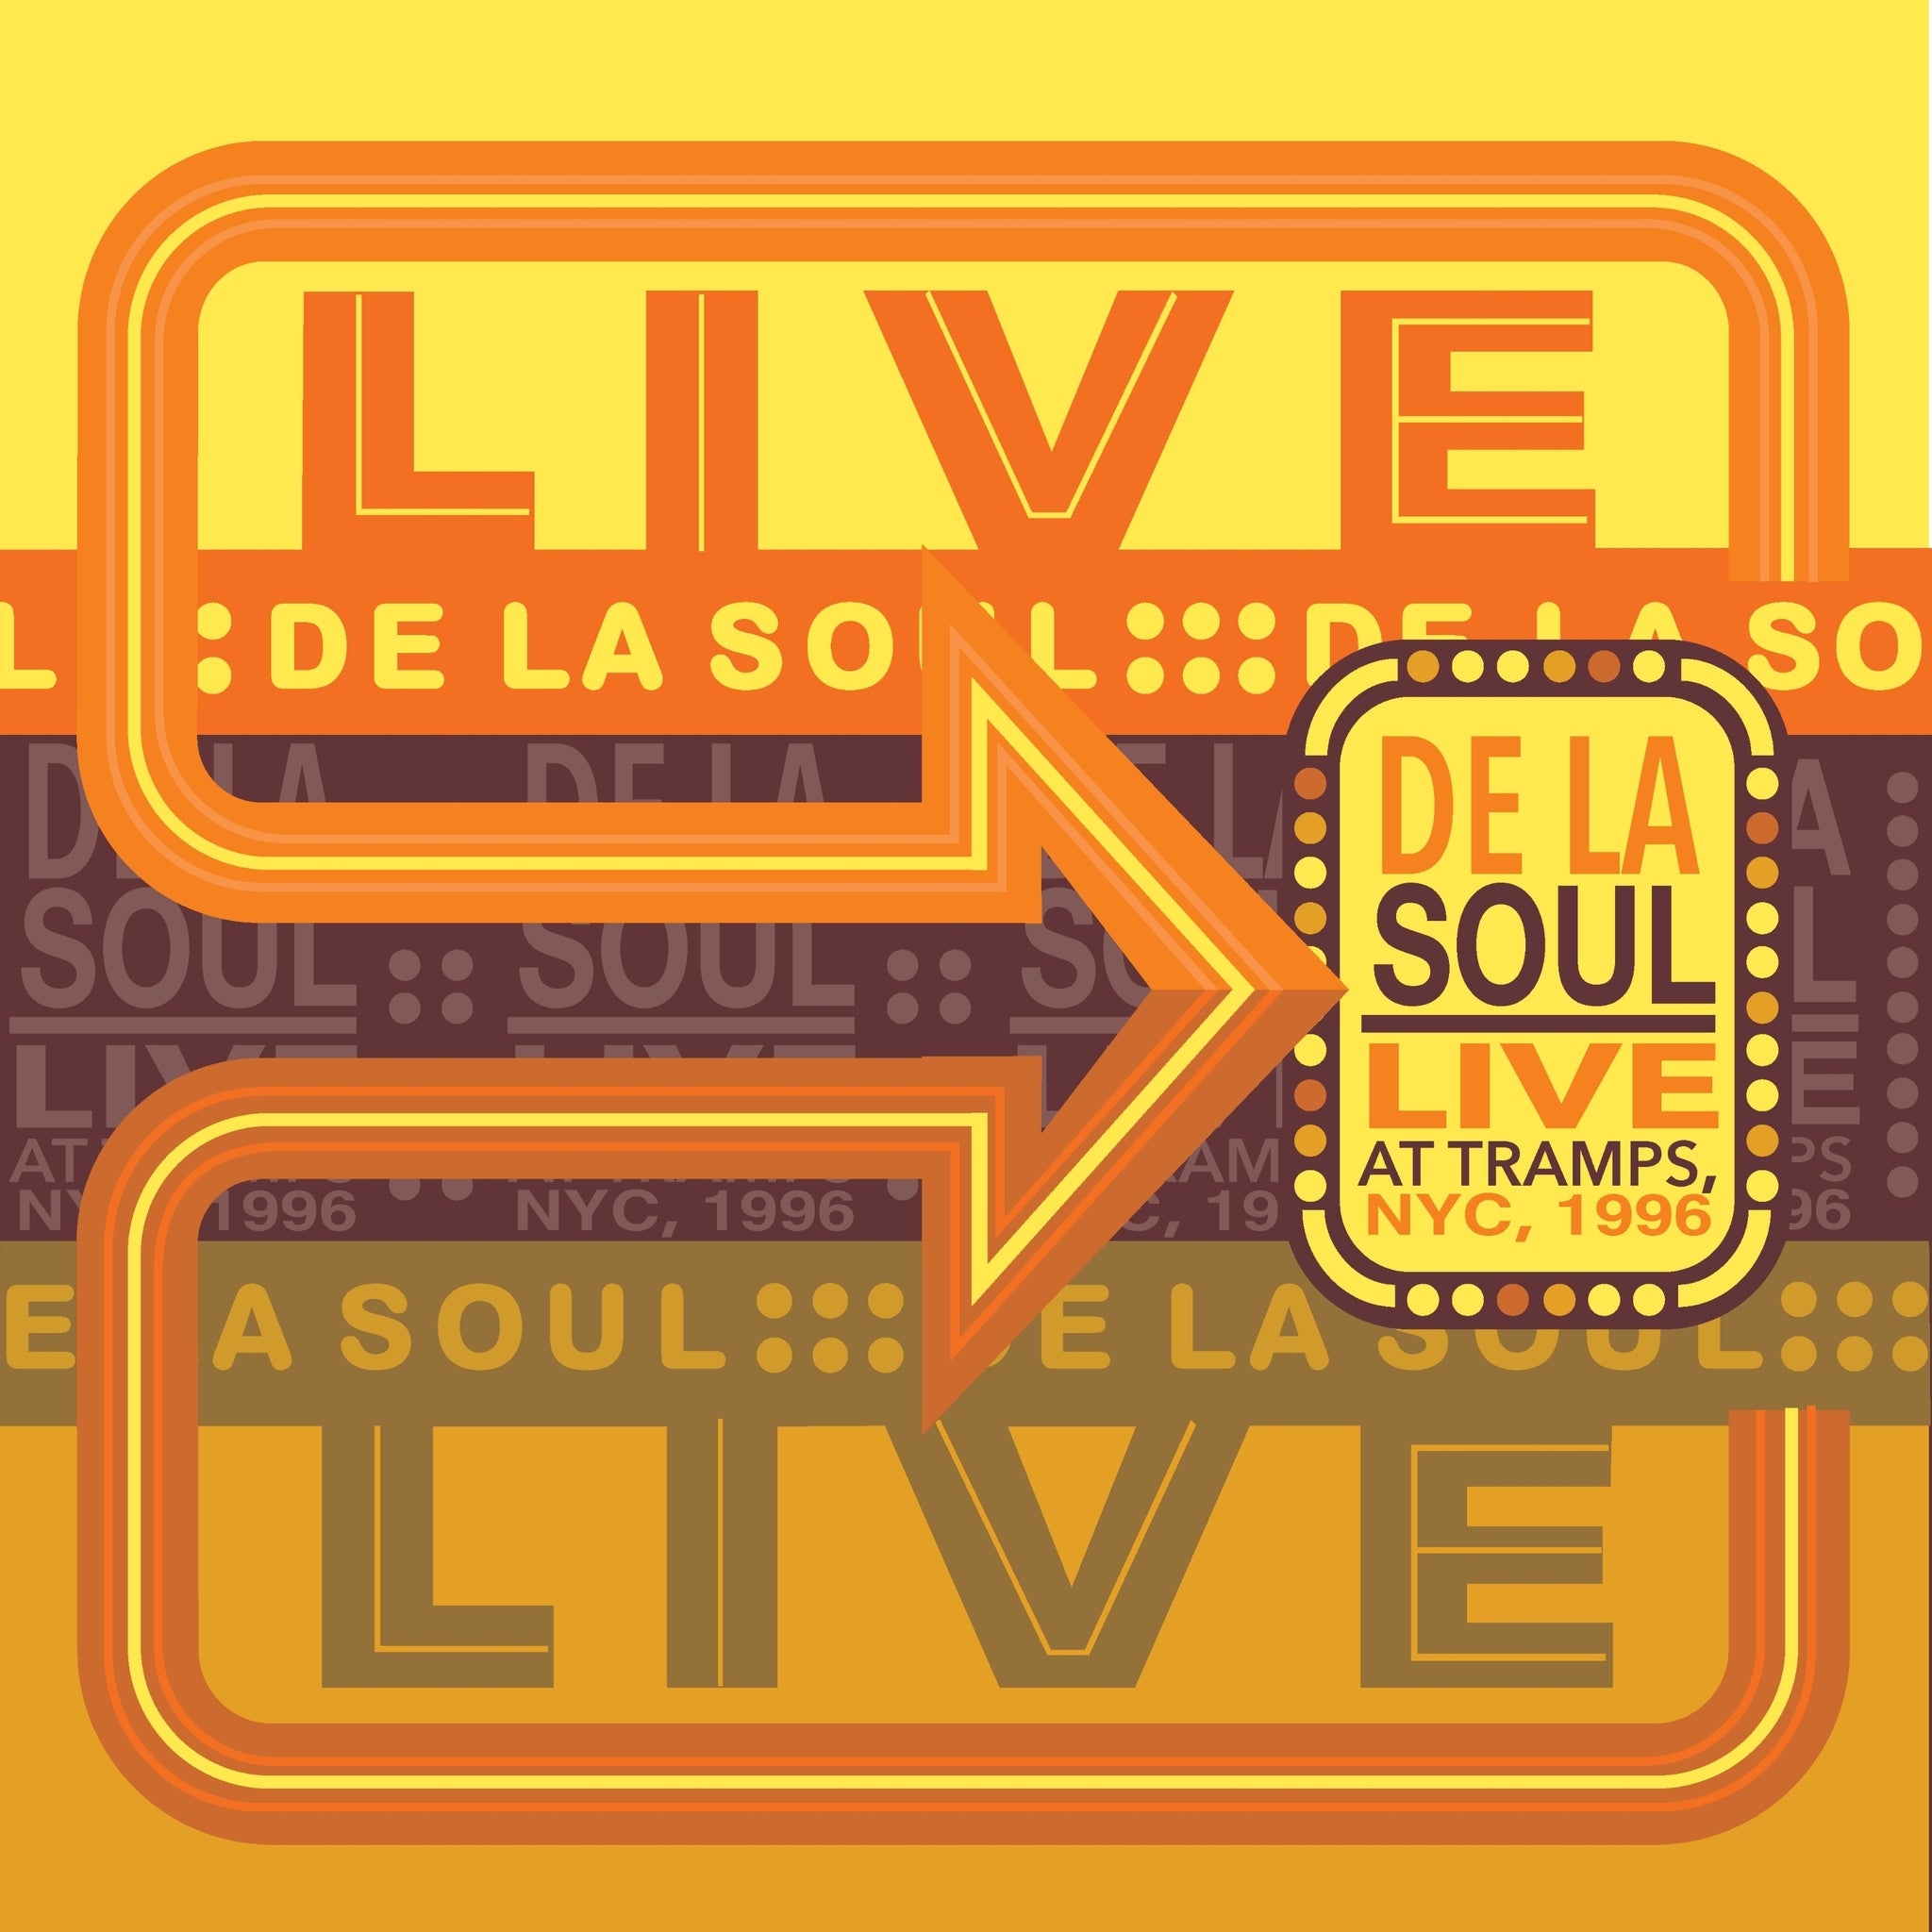 DE LA SOUL - Live at Tramps, NYC, 1996 - 1 LP - 140g Tan Vinyl [RSD 2024]